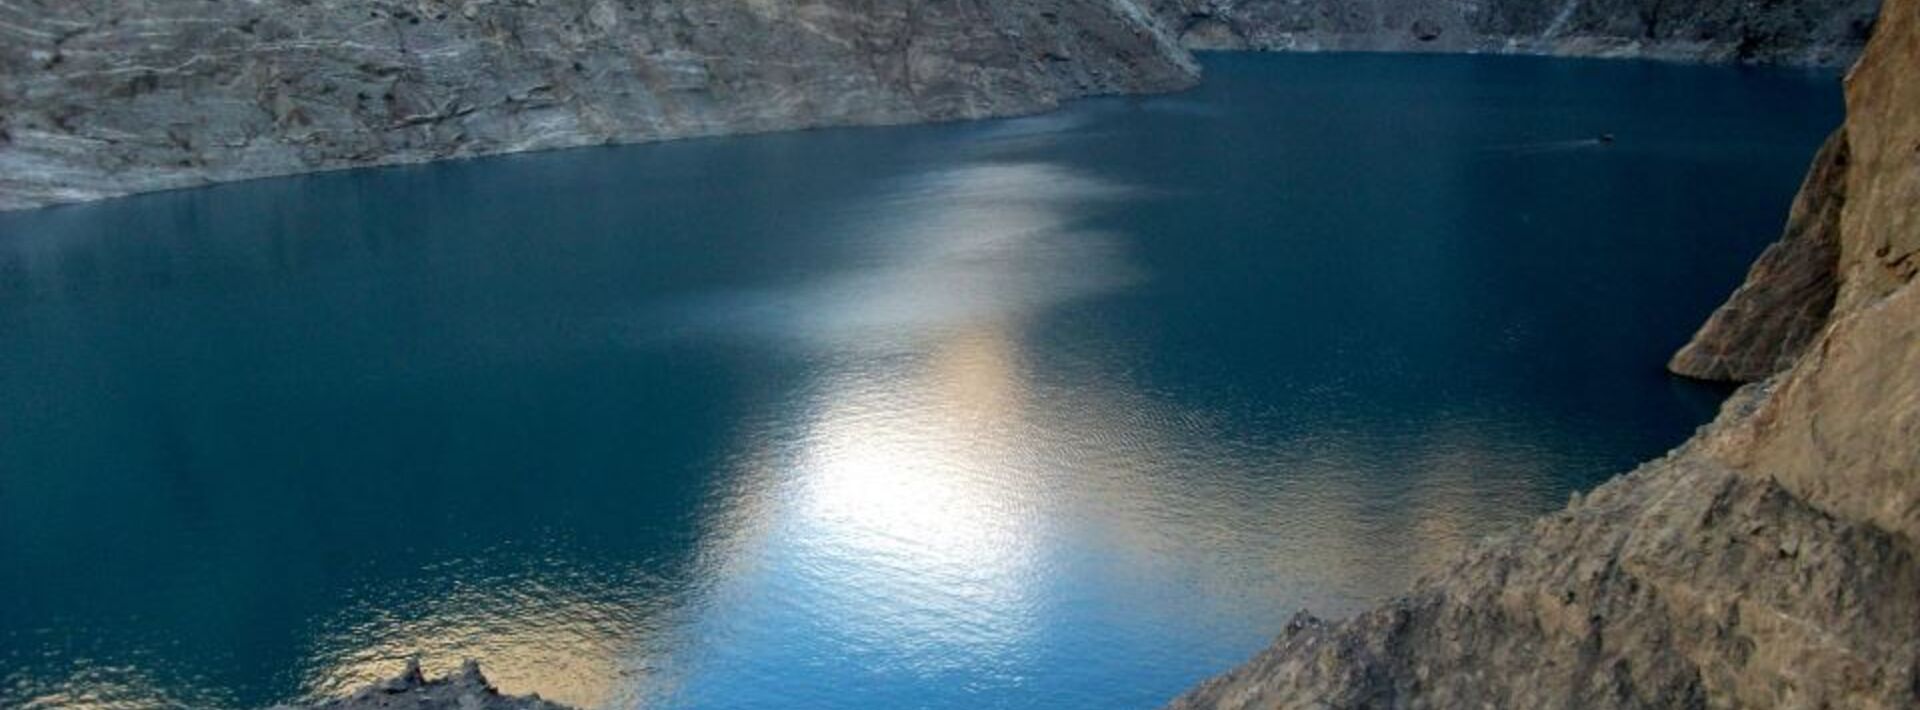 attabad lake